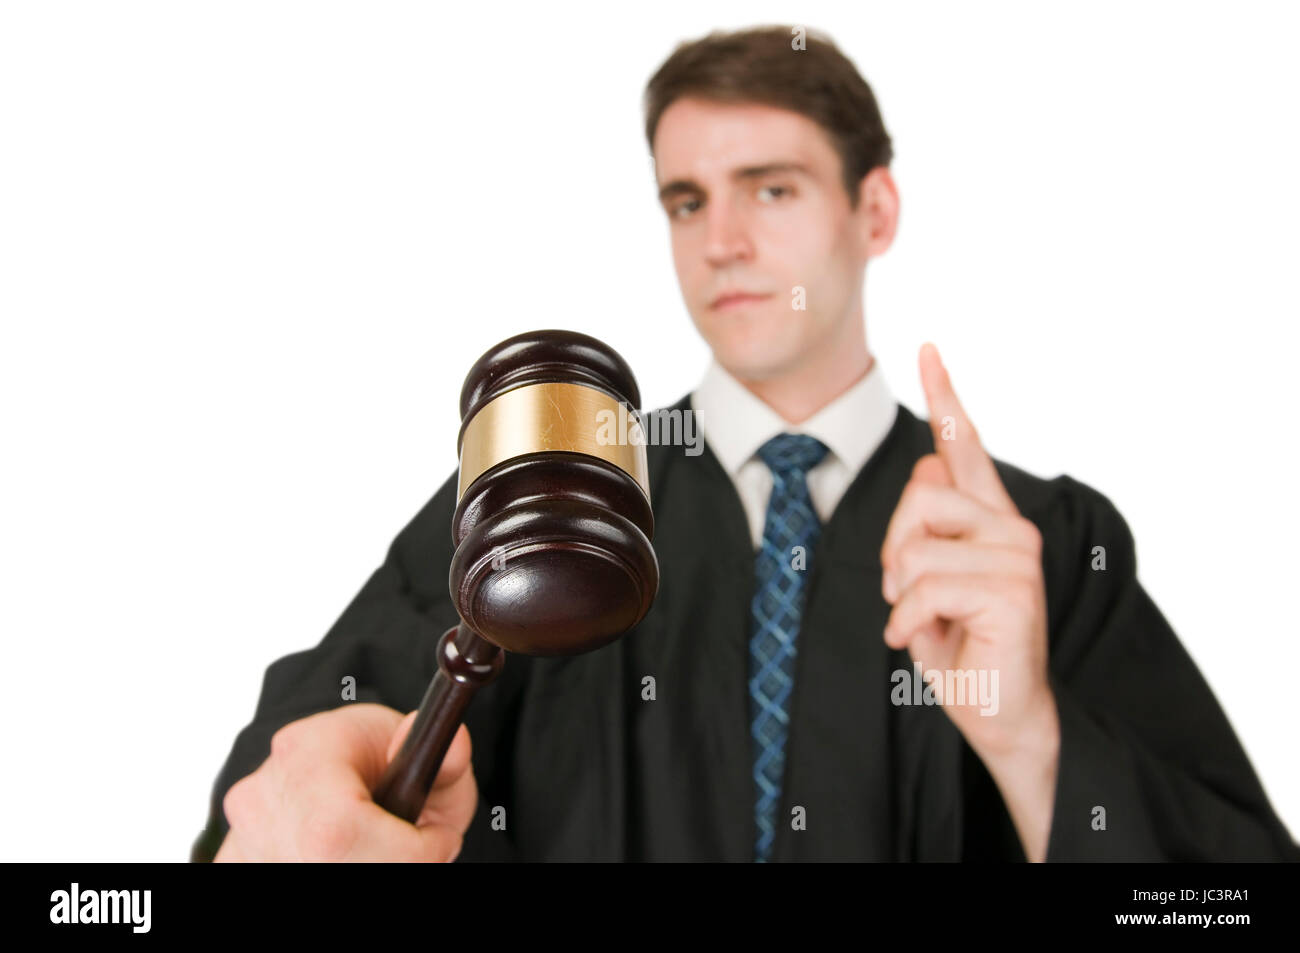 Oberkörperansicht eines jungen Mannes in Richter-Robe vor weissen Hintergrund mit Gravel (Richterhammer) in der rechten Hand ernst und mit erhobenen Zeigefinger in die Kamera blickend Stock Photo